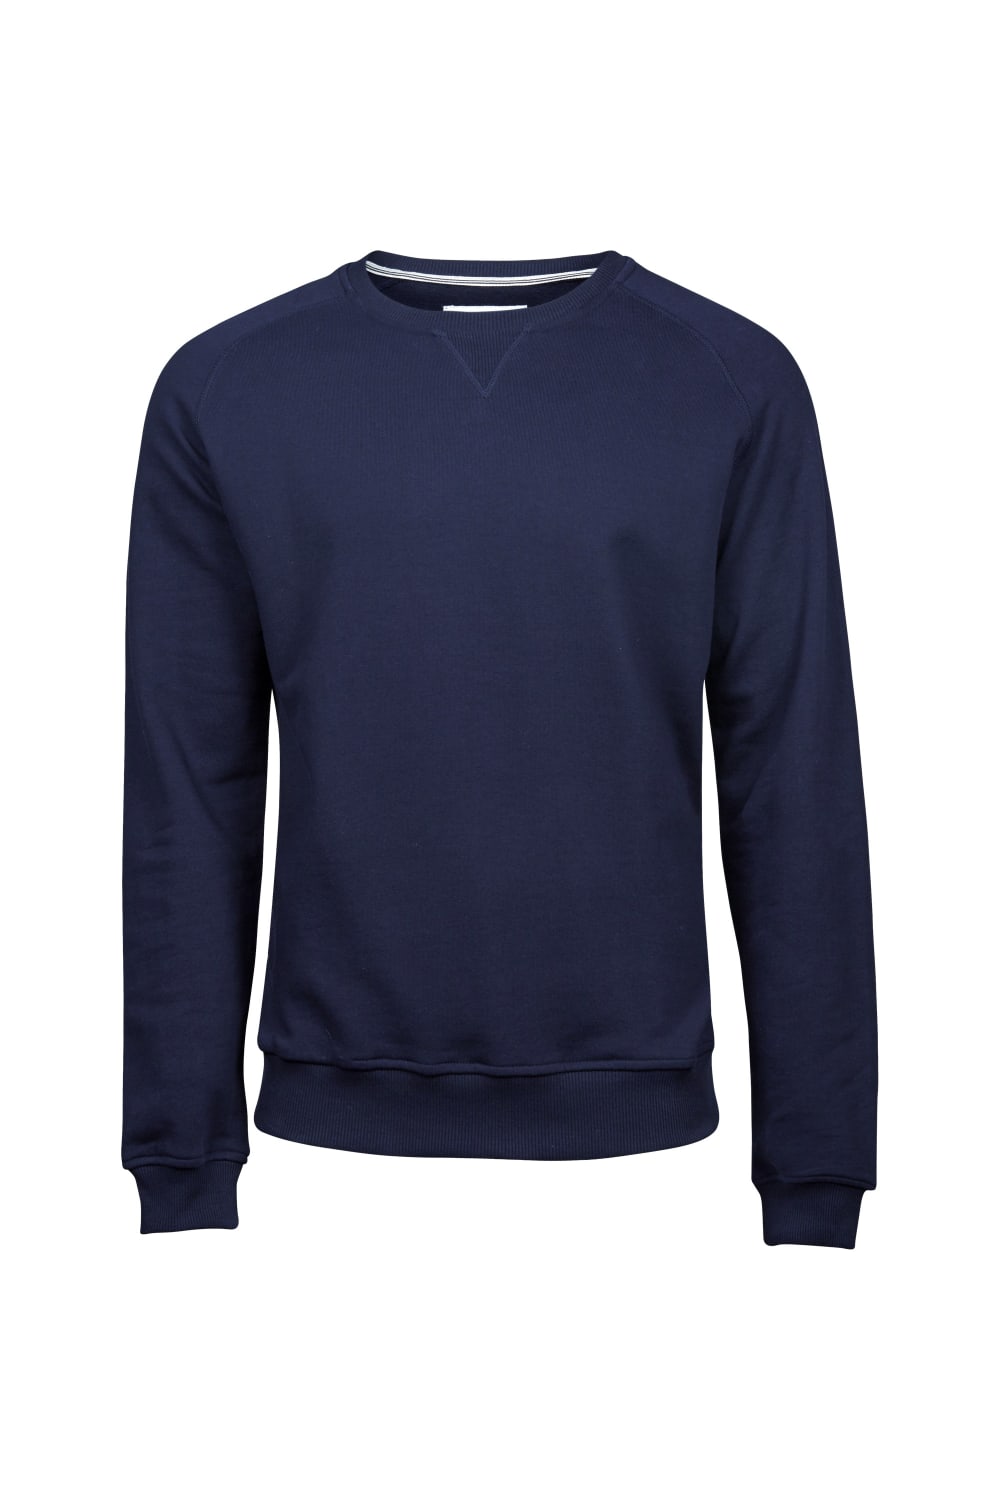 Tee Jays Mens Urban Raglan Sweatshirt (Navy)